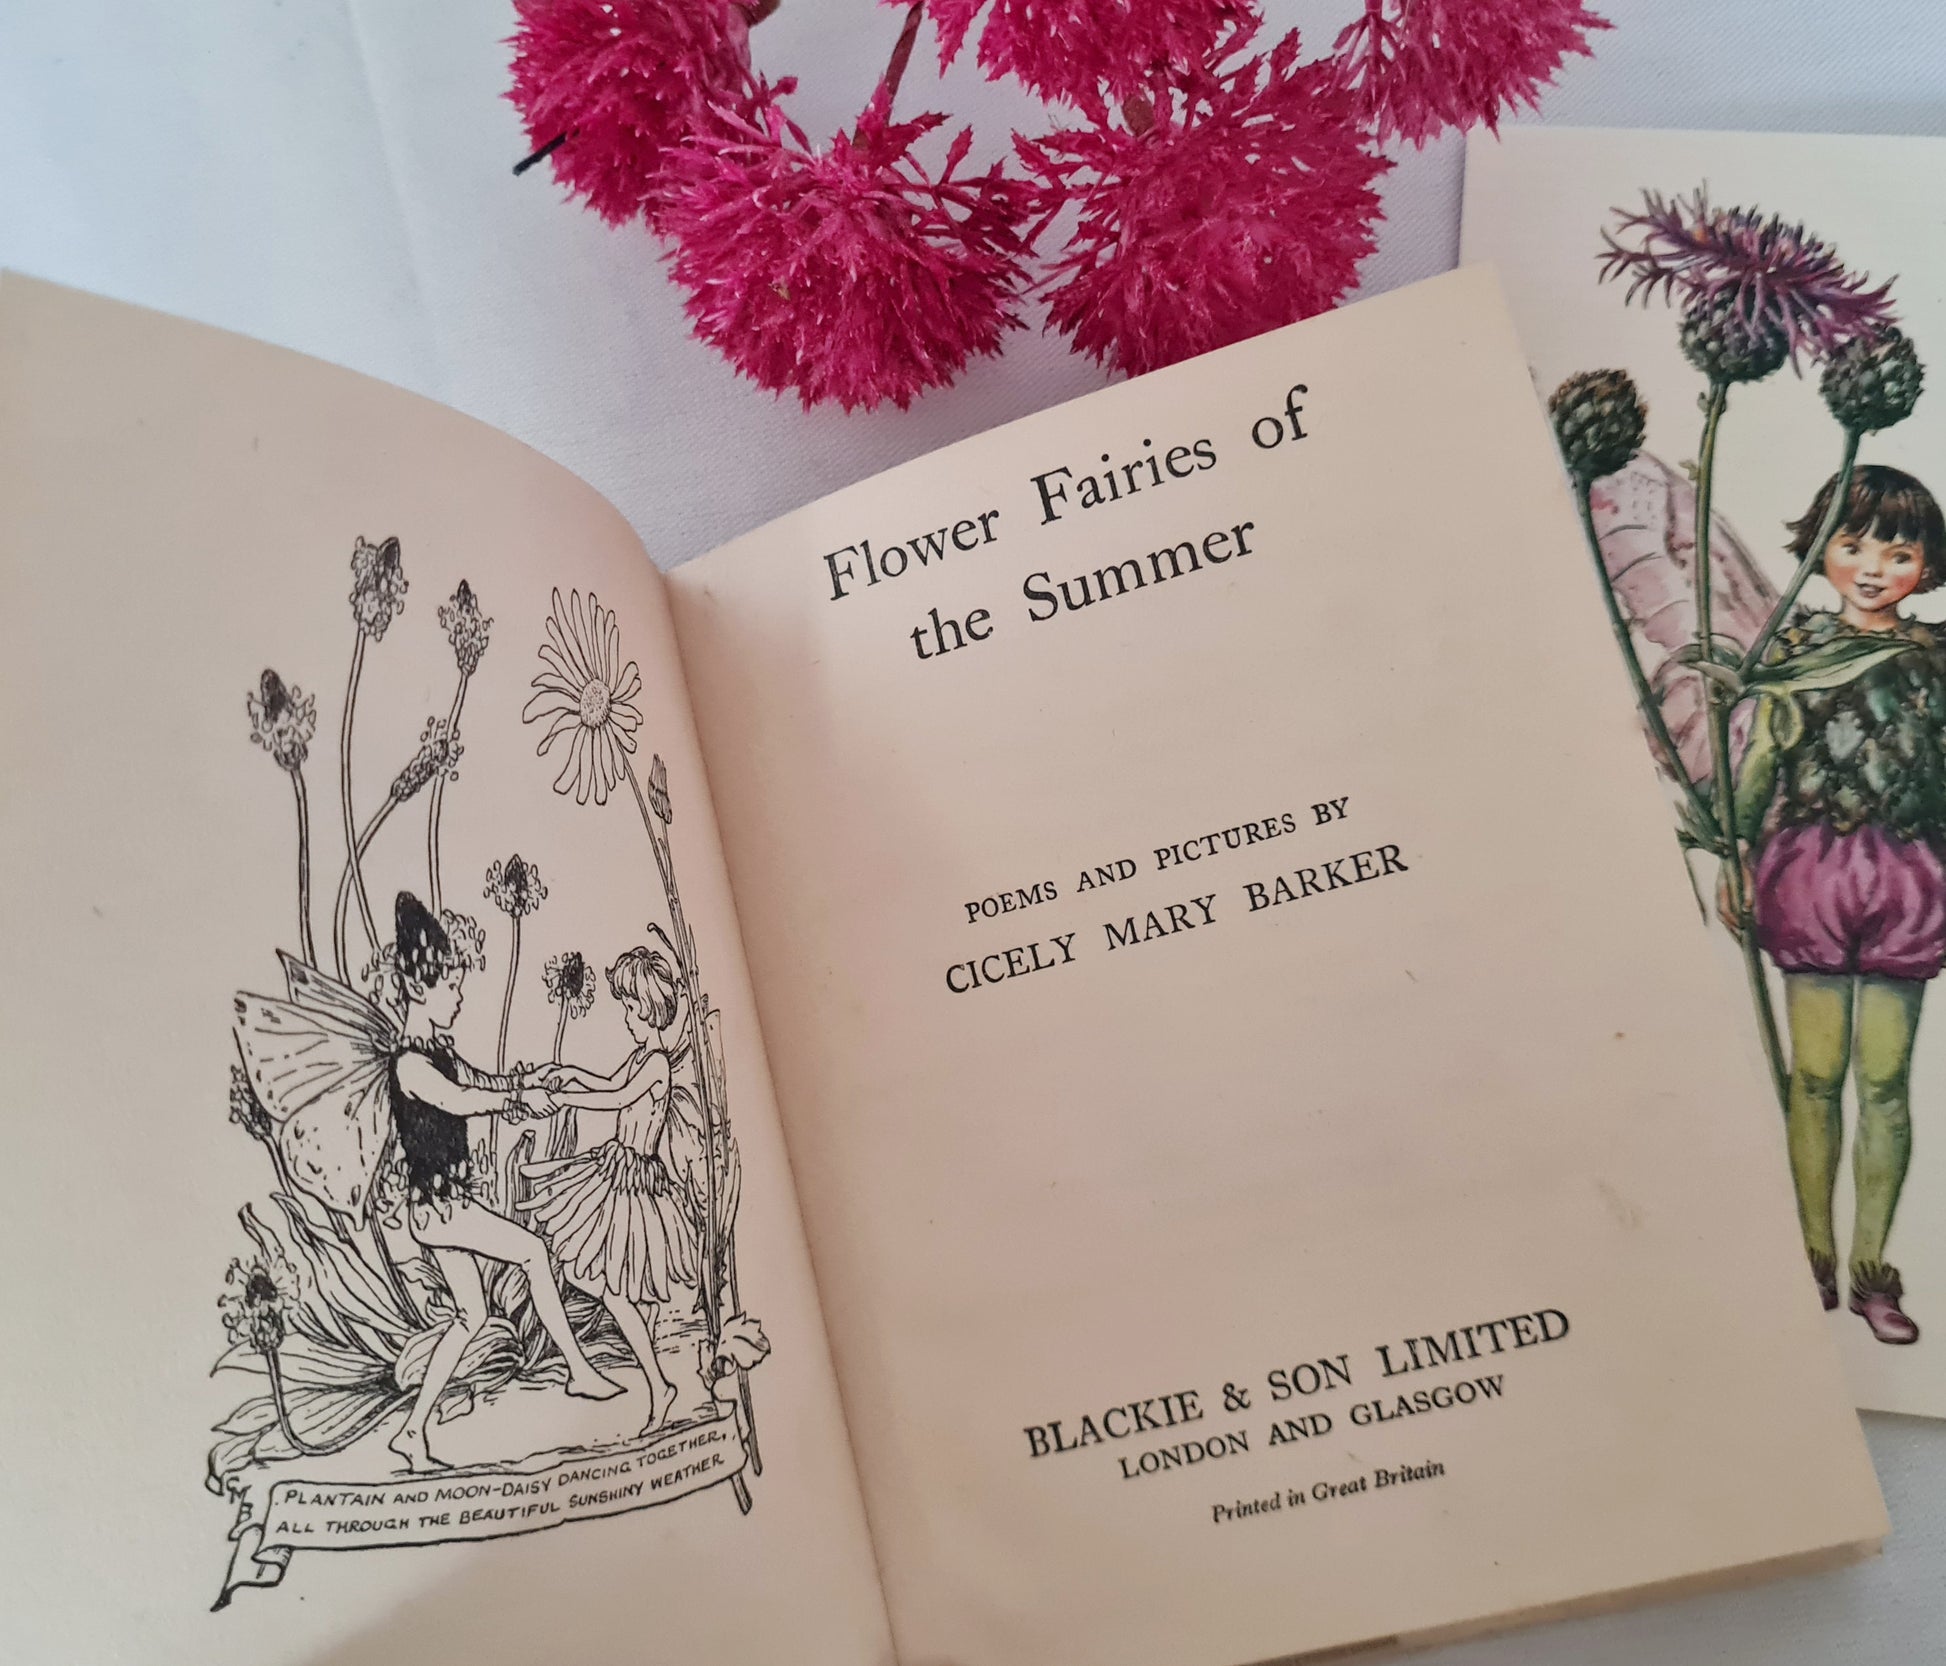 Flower Fairy Books  Cicely Mary Barker Fairy Books